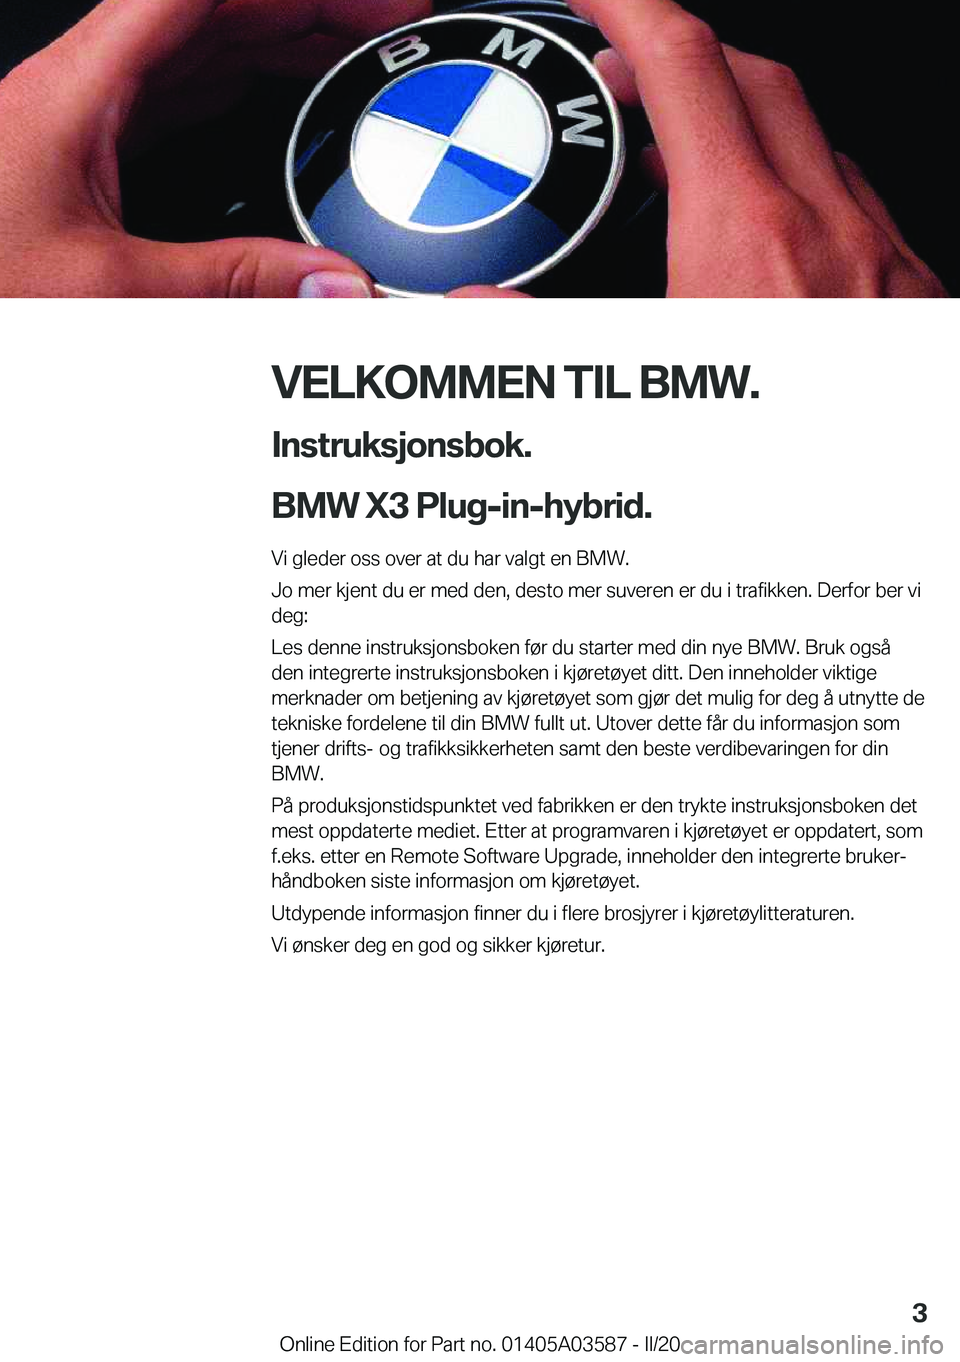 BMW X3 PLUG IN HYBRID 2020  InstruksjonsbØker (in Norwegian) �V�E�L�K�O�M�M�E�N��T�I�L��B�M�W�.�I�n�s�t�r�u�k�s�j�o�n�s�b�o�k�.
�B�M�W��X�3��P�l�u�g�-�i�n�-�h�y�b�r�i�d�.
�V�i��g�l�e�d�e�r��o�s�s��o�v�e�r��a�t��d�u��h�a�r��v�a�l�g�t��e�n��B�M�W�.
�